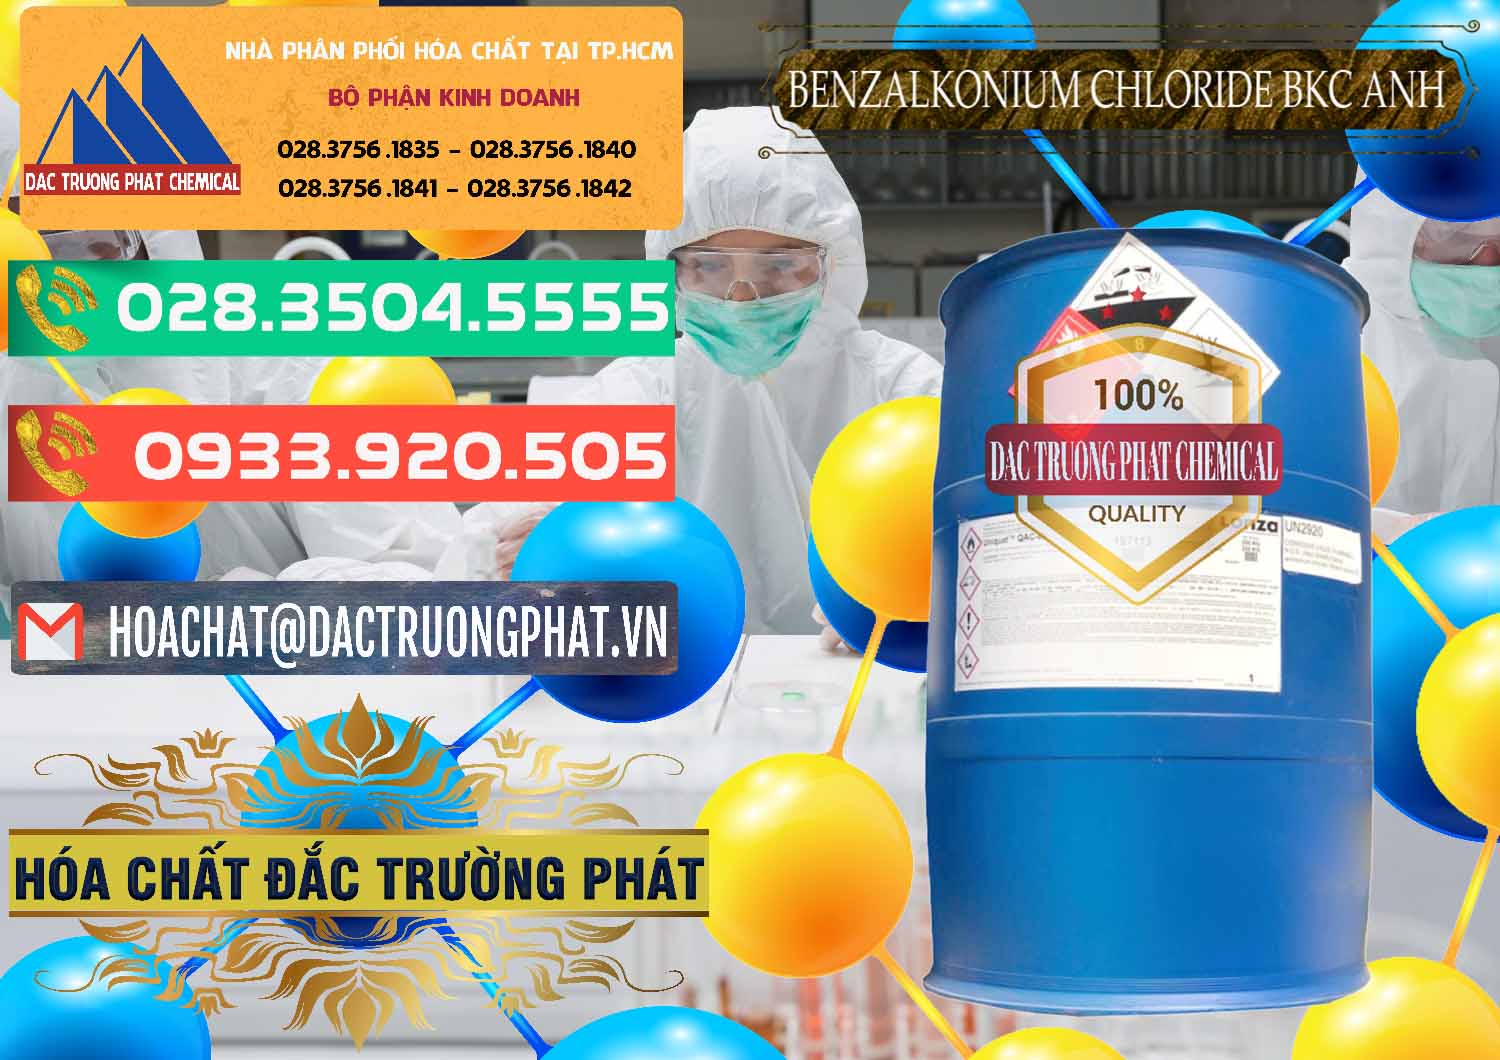 Chuyên kinh doanh và bán BKC - Benzalkonium Chloride 80% Anh Quốc Uk Kingdoms - 0457 - Cty chuyên phân phối _ cung ứng hóa chất tại TP.HCM - congtyhoachat.com.vn